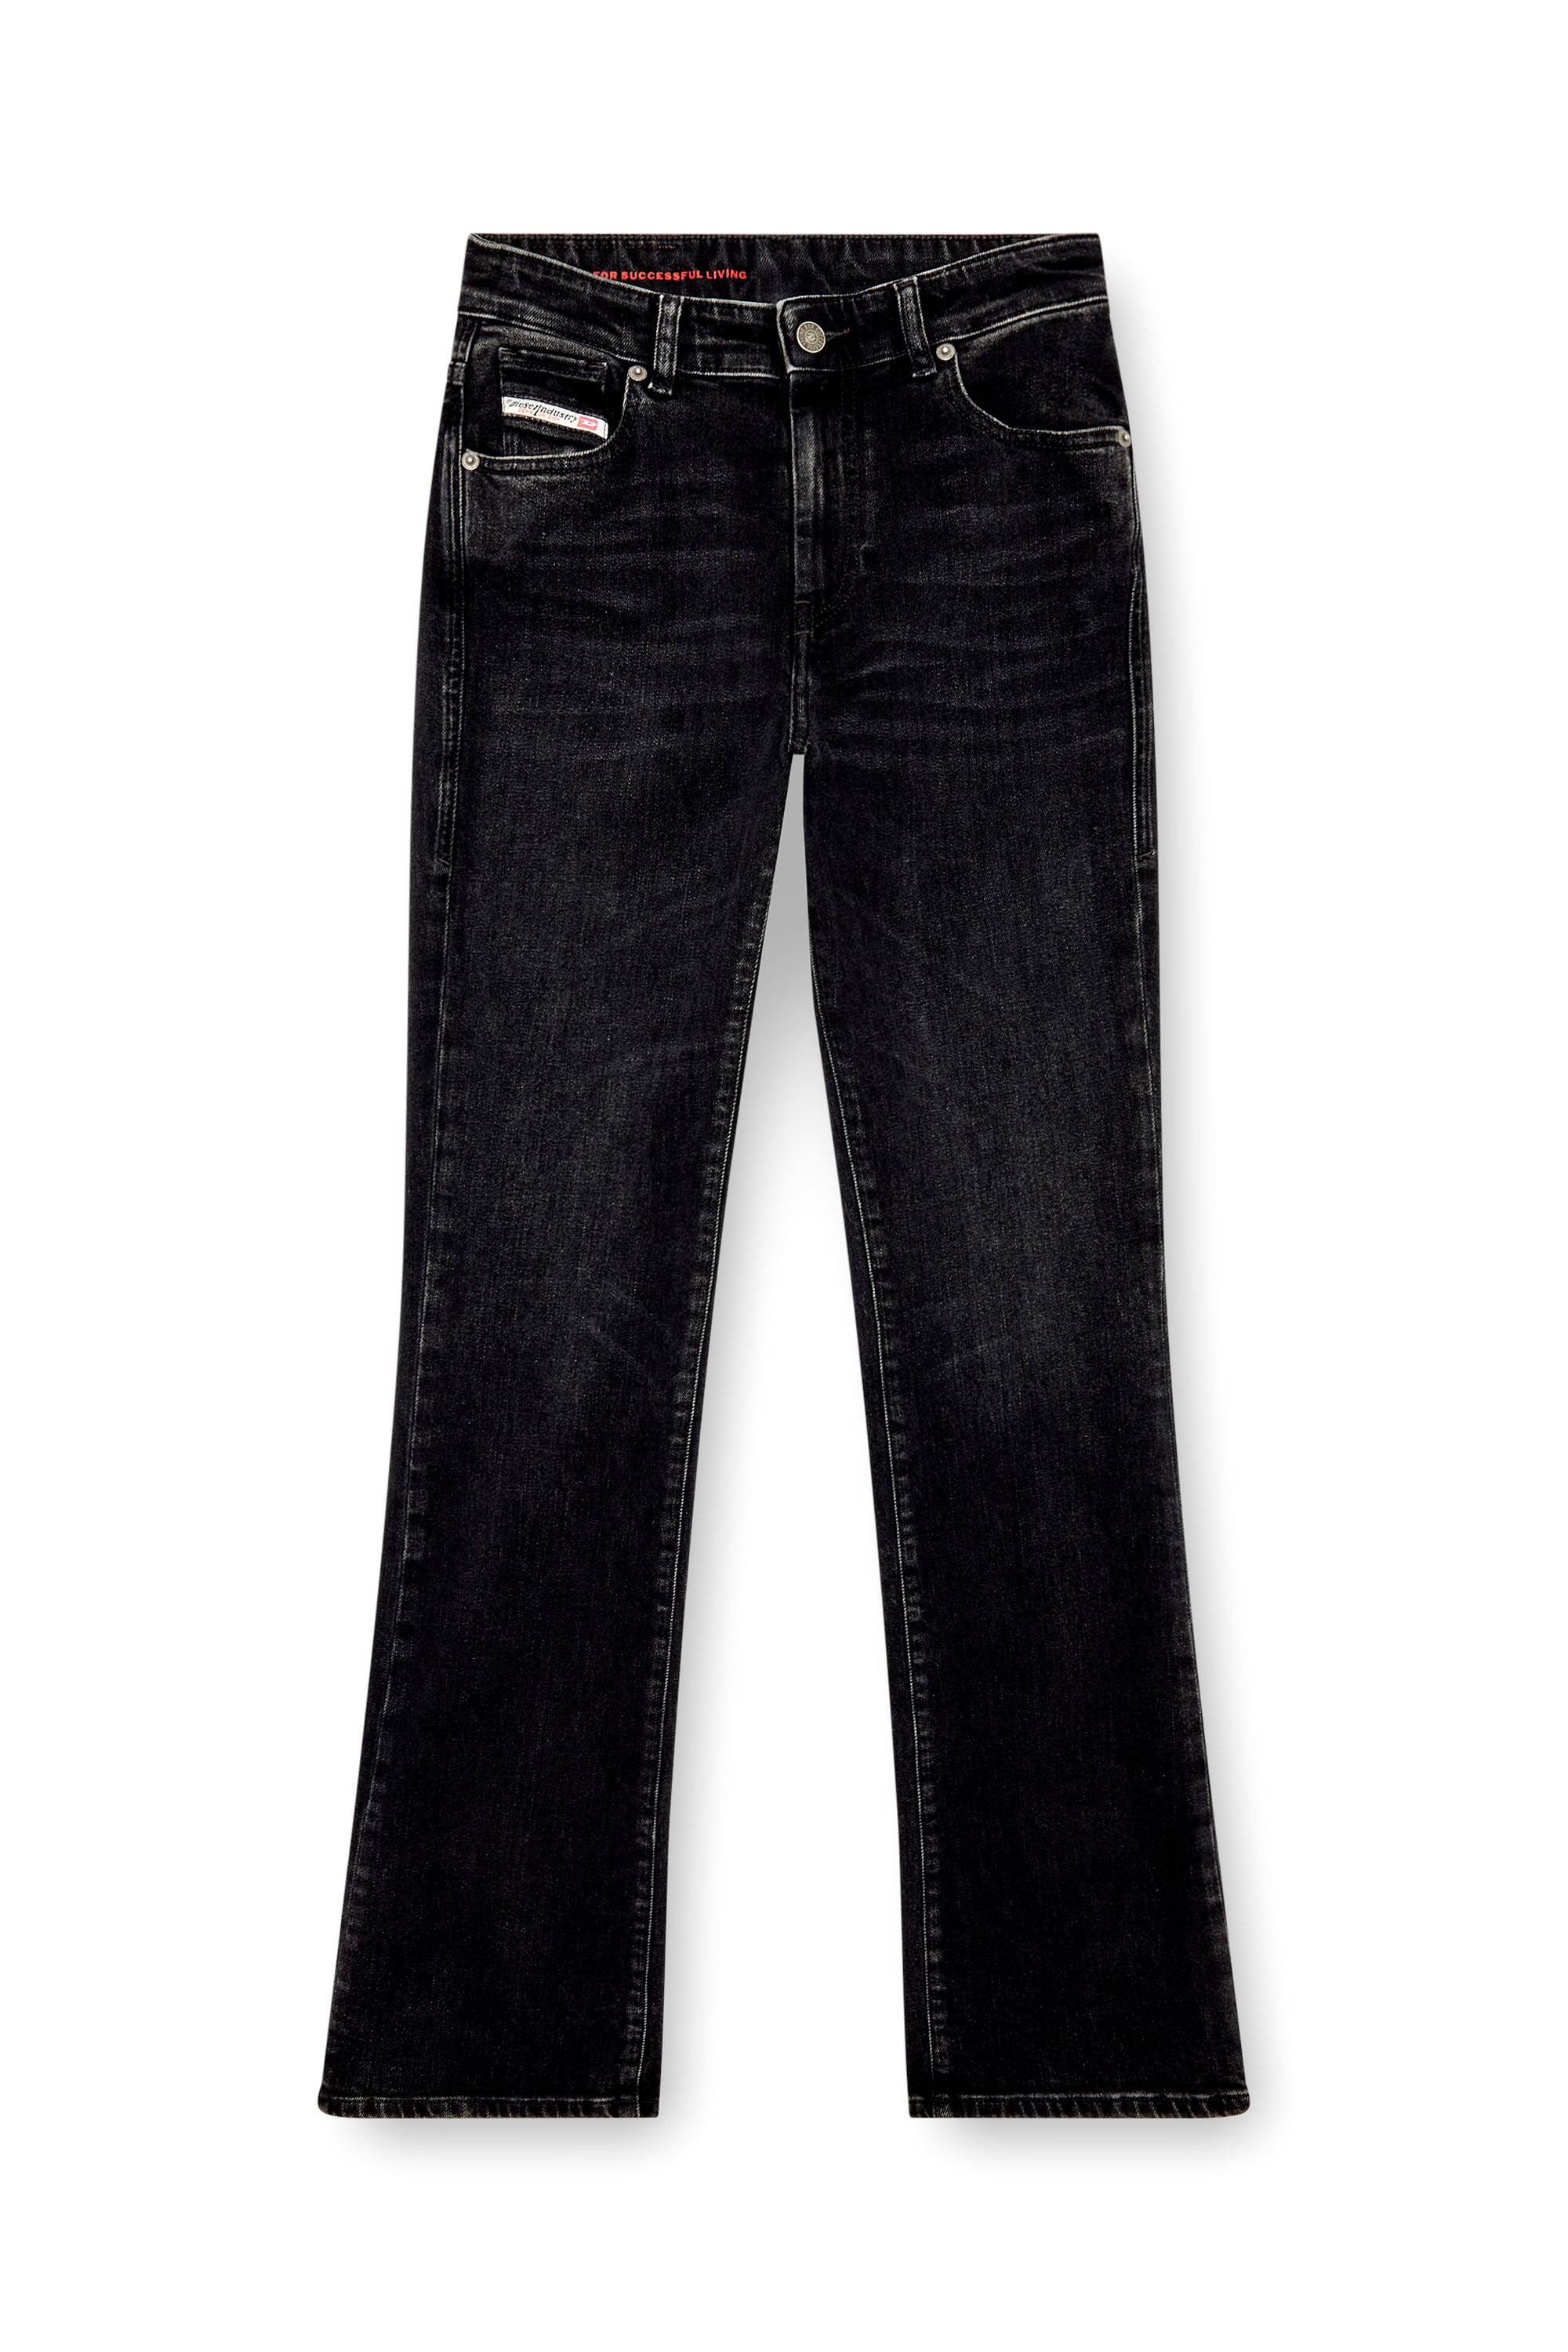 Diesel - Donna Bootcut and Flare Jeans 2003 D-Escription 09I30, Nero/Grigio scuro - Image 5